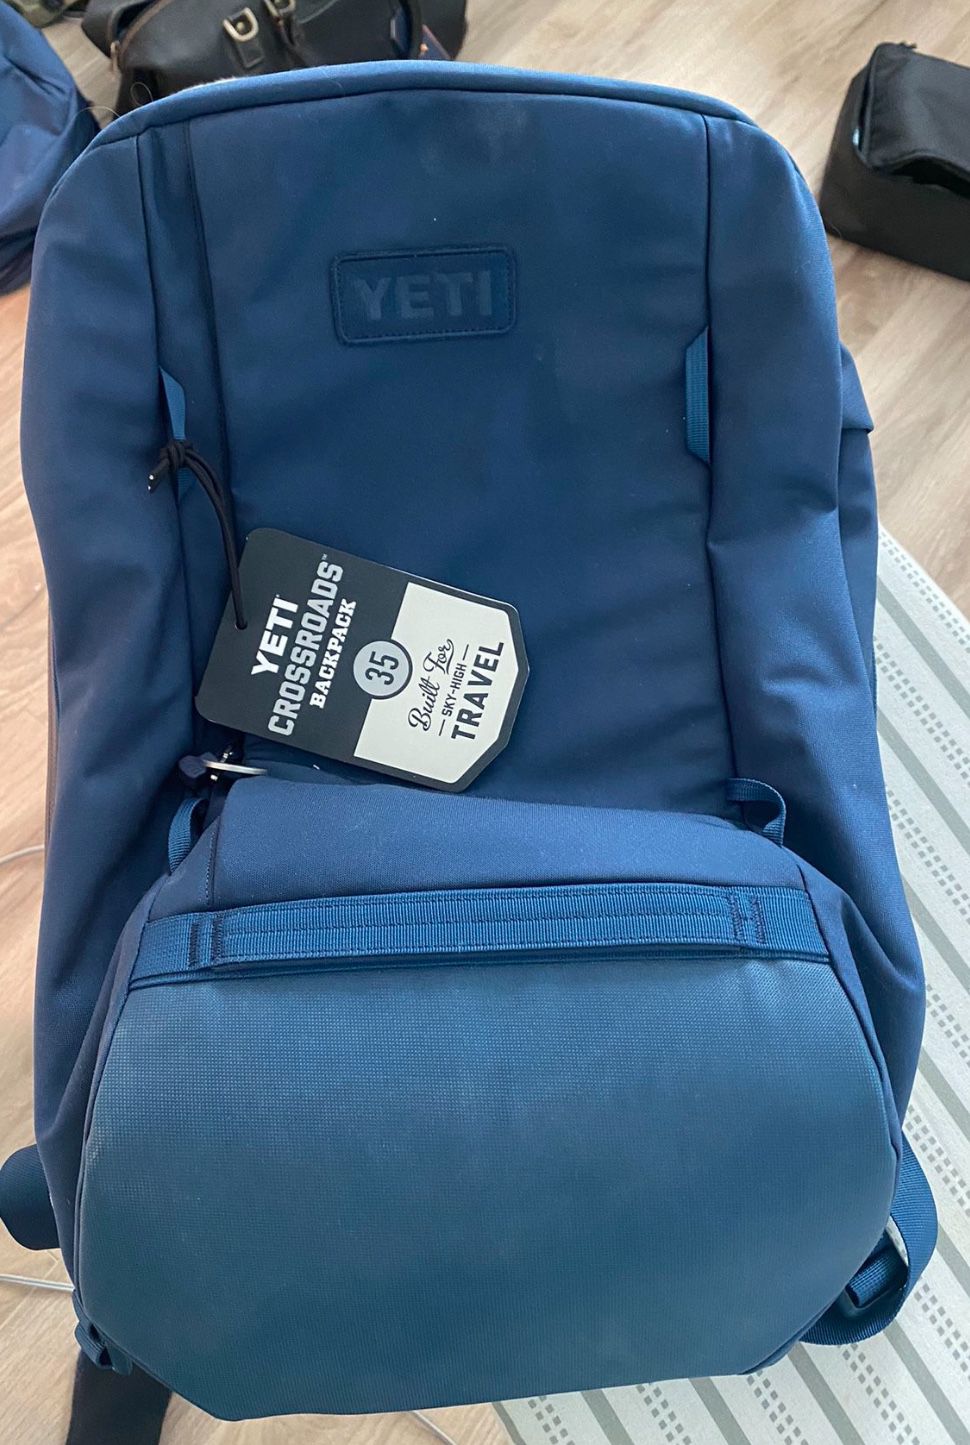 New Yeti Crossroads Backpack 